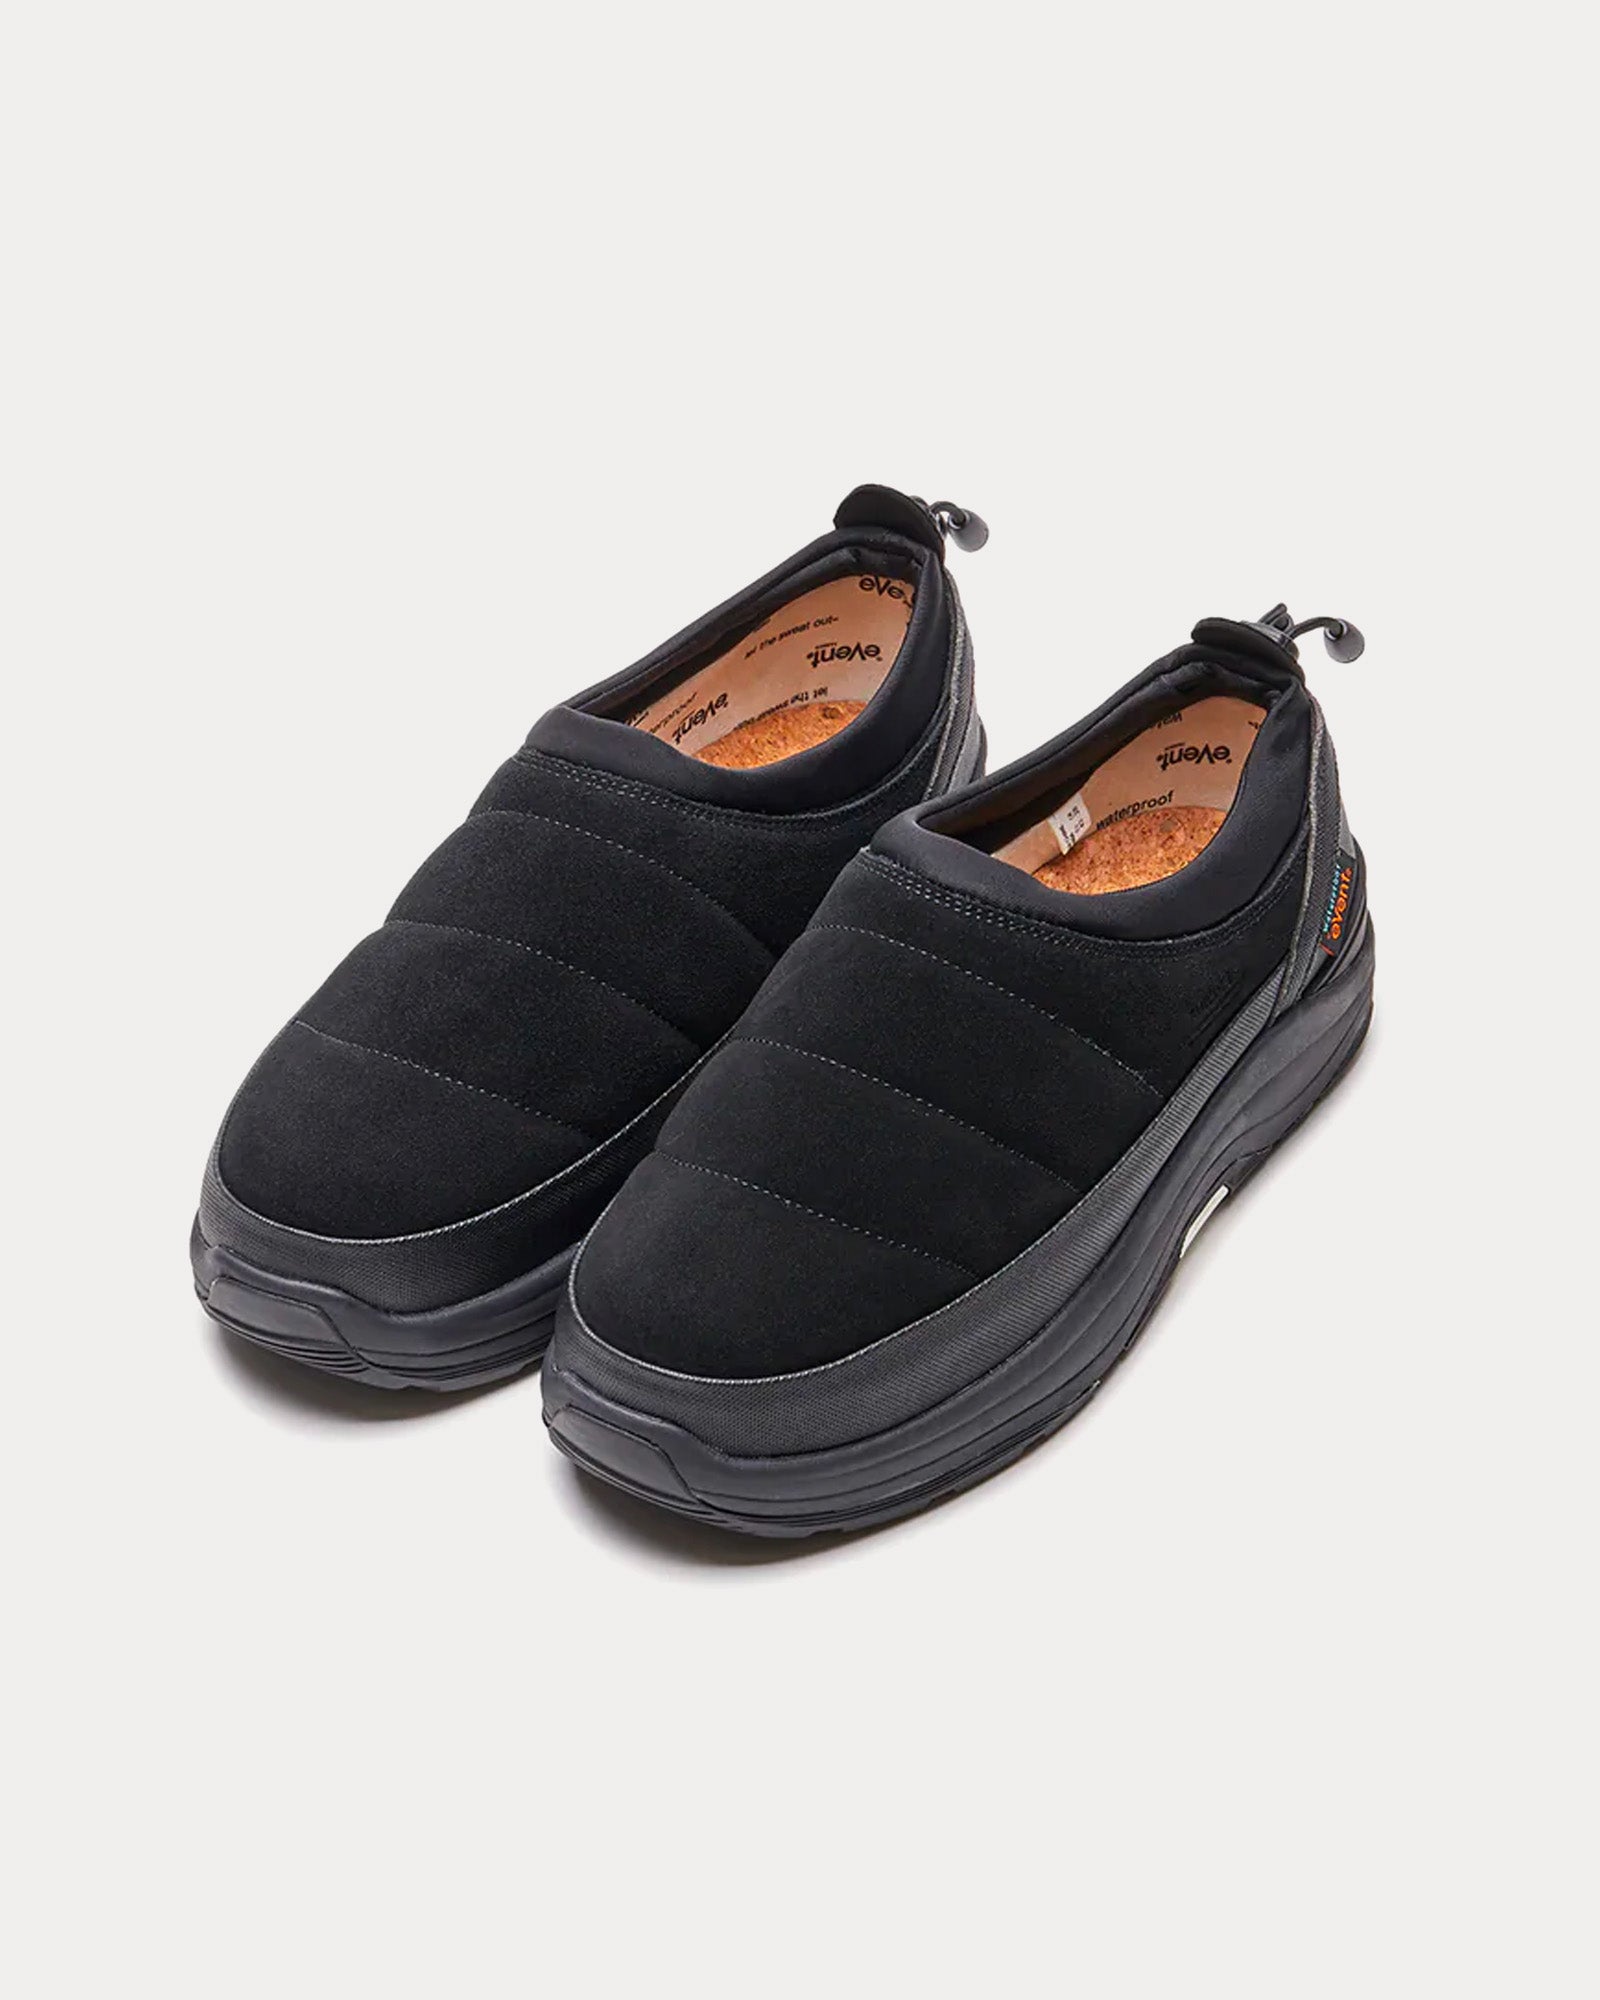 Suicoke - PEPPER-mod-sev Suede Black Slip On Sneakers